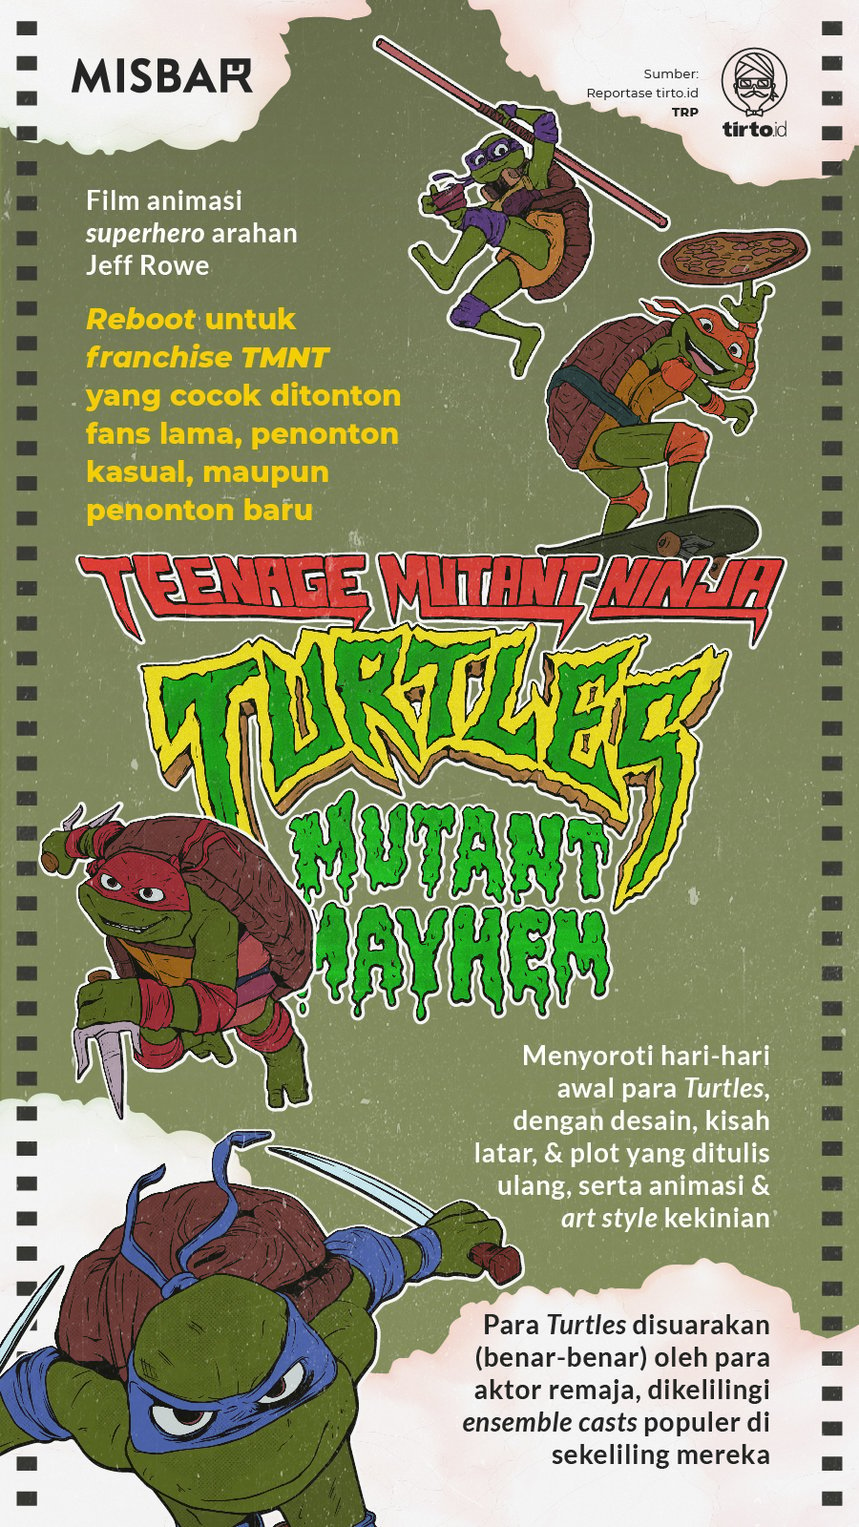  Infografik Misbar Teenage Mutant Ninja Turtles